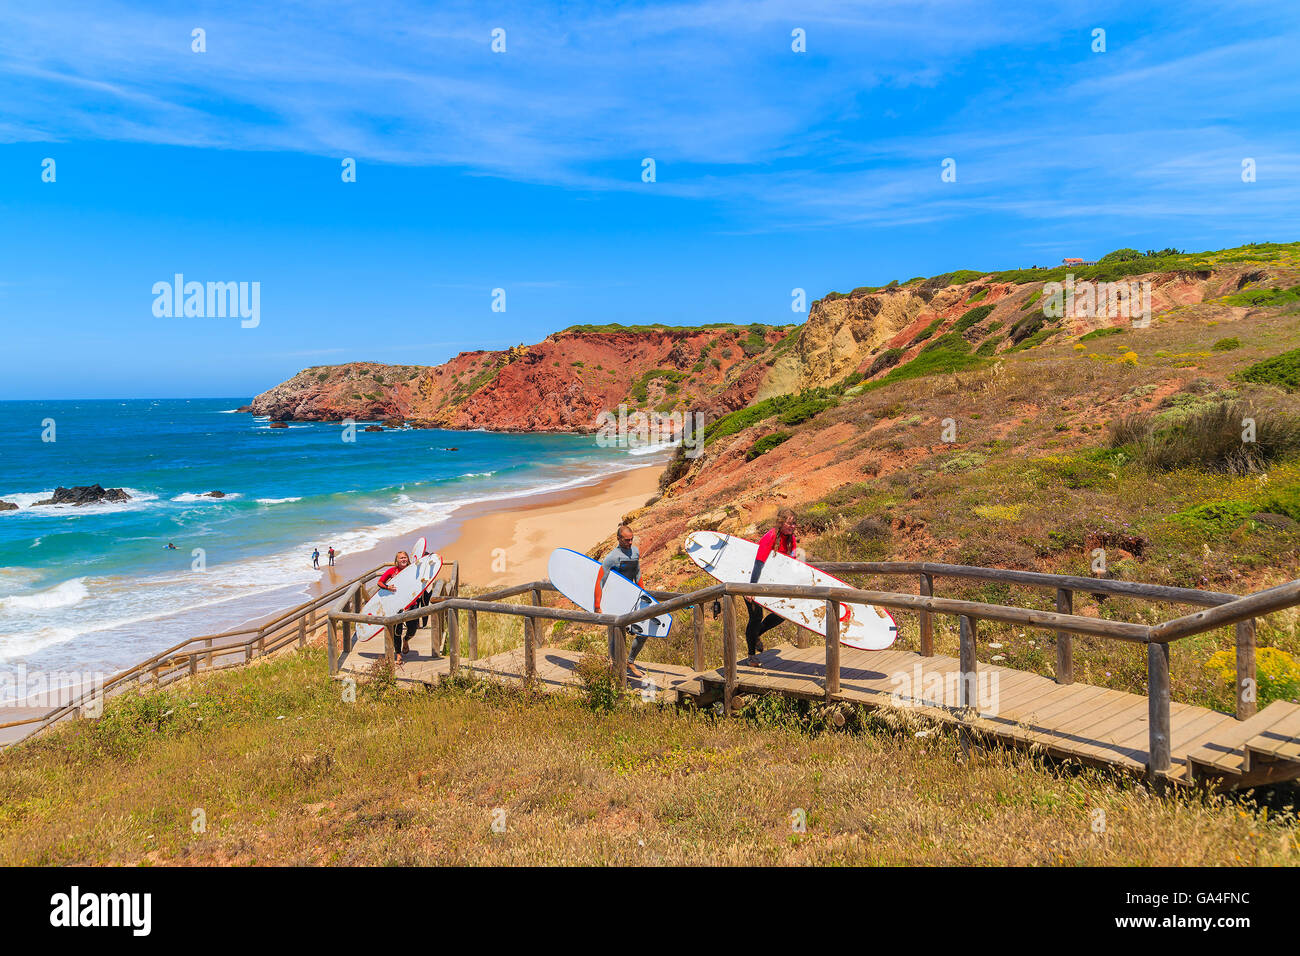 PRAIA DO AMADO Beach, Portogallo - 15 Maggio 2015: surfers camminando sulla passerella dalla bella spiaggia nella regione di Algarve. Il surf è lo sport popolare nel sud-ovest del Portogallo a causa di frequenti forti venti. Foto Stock